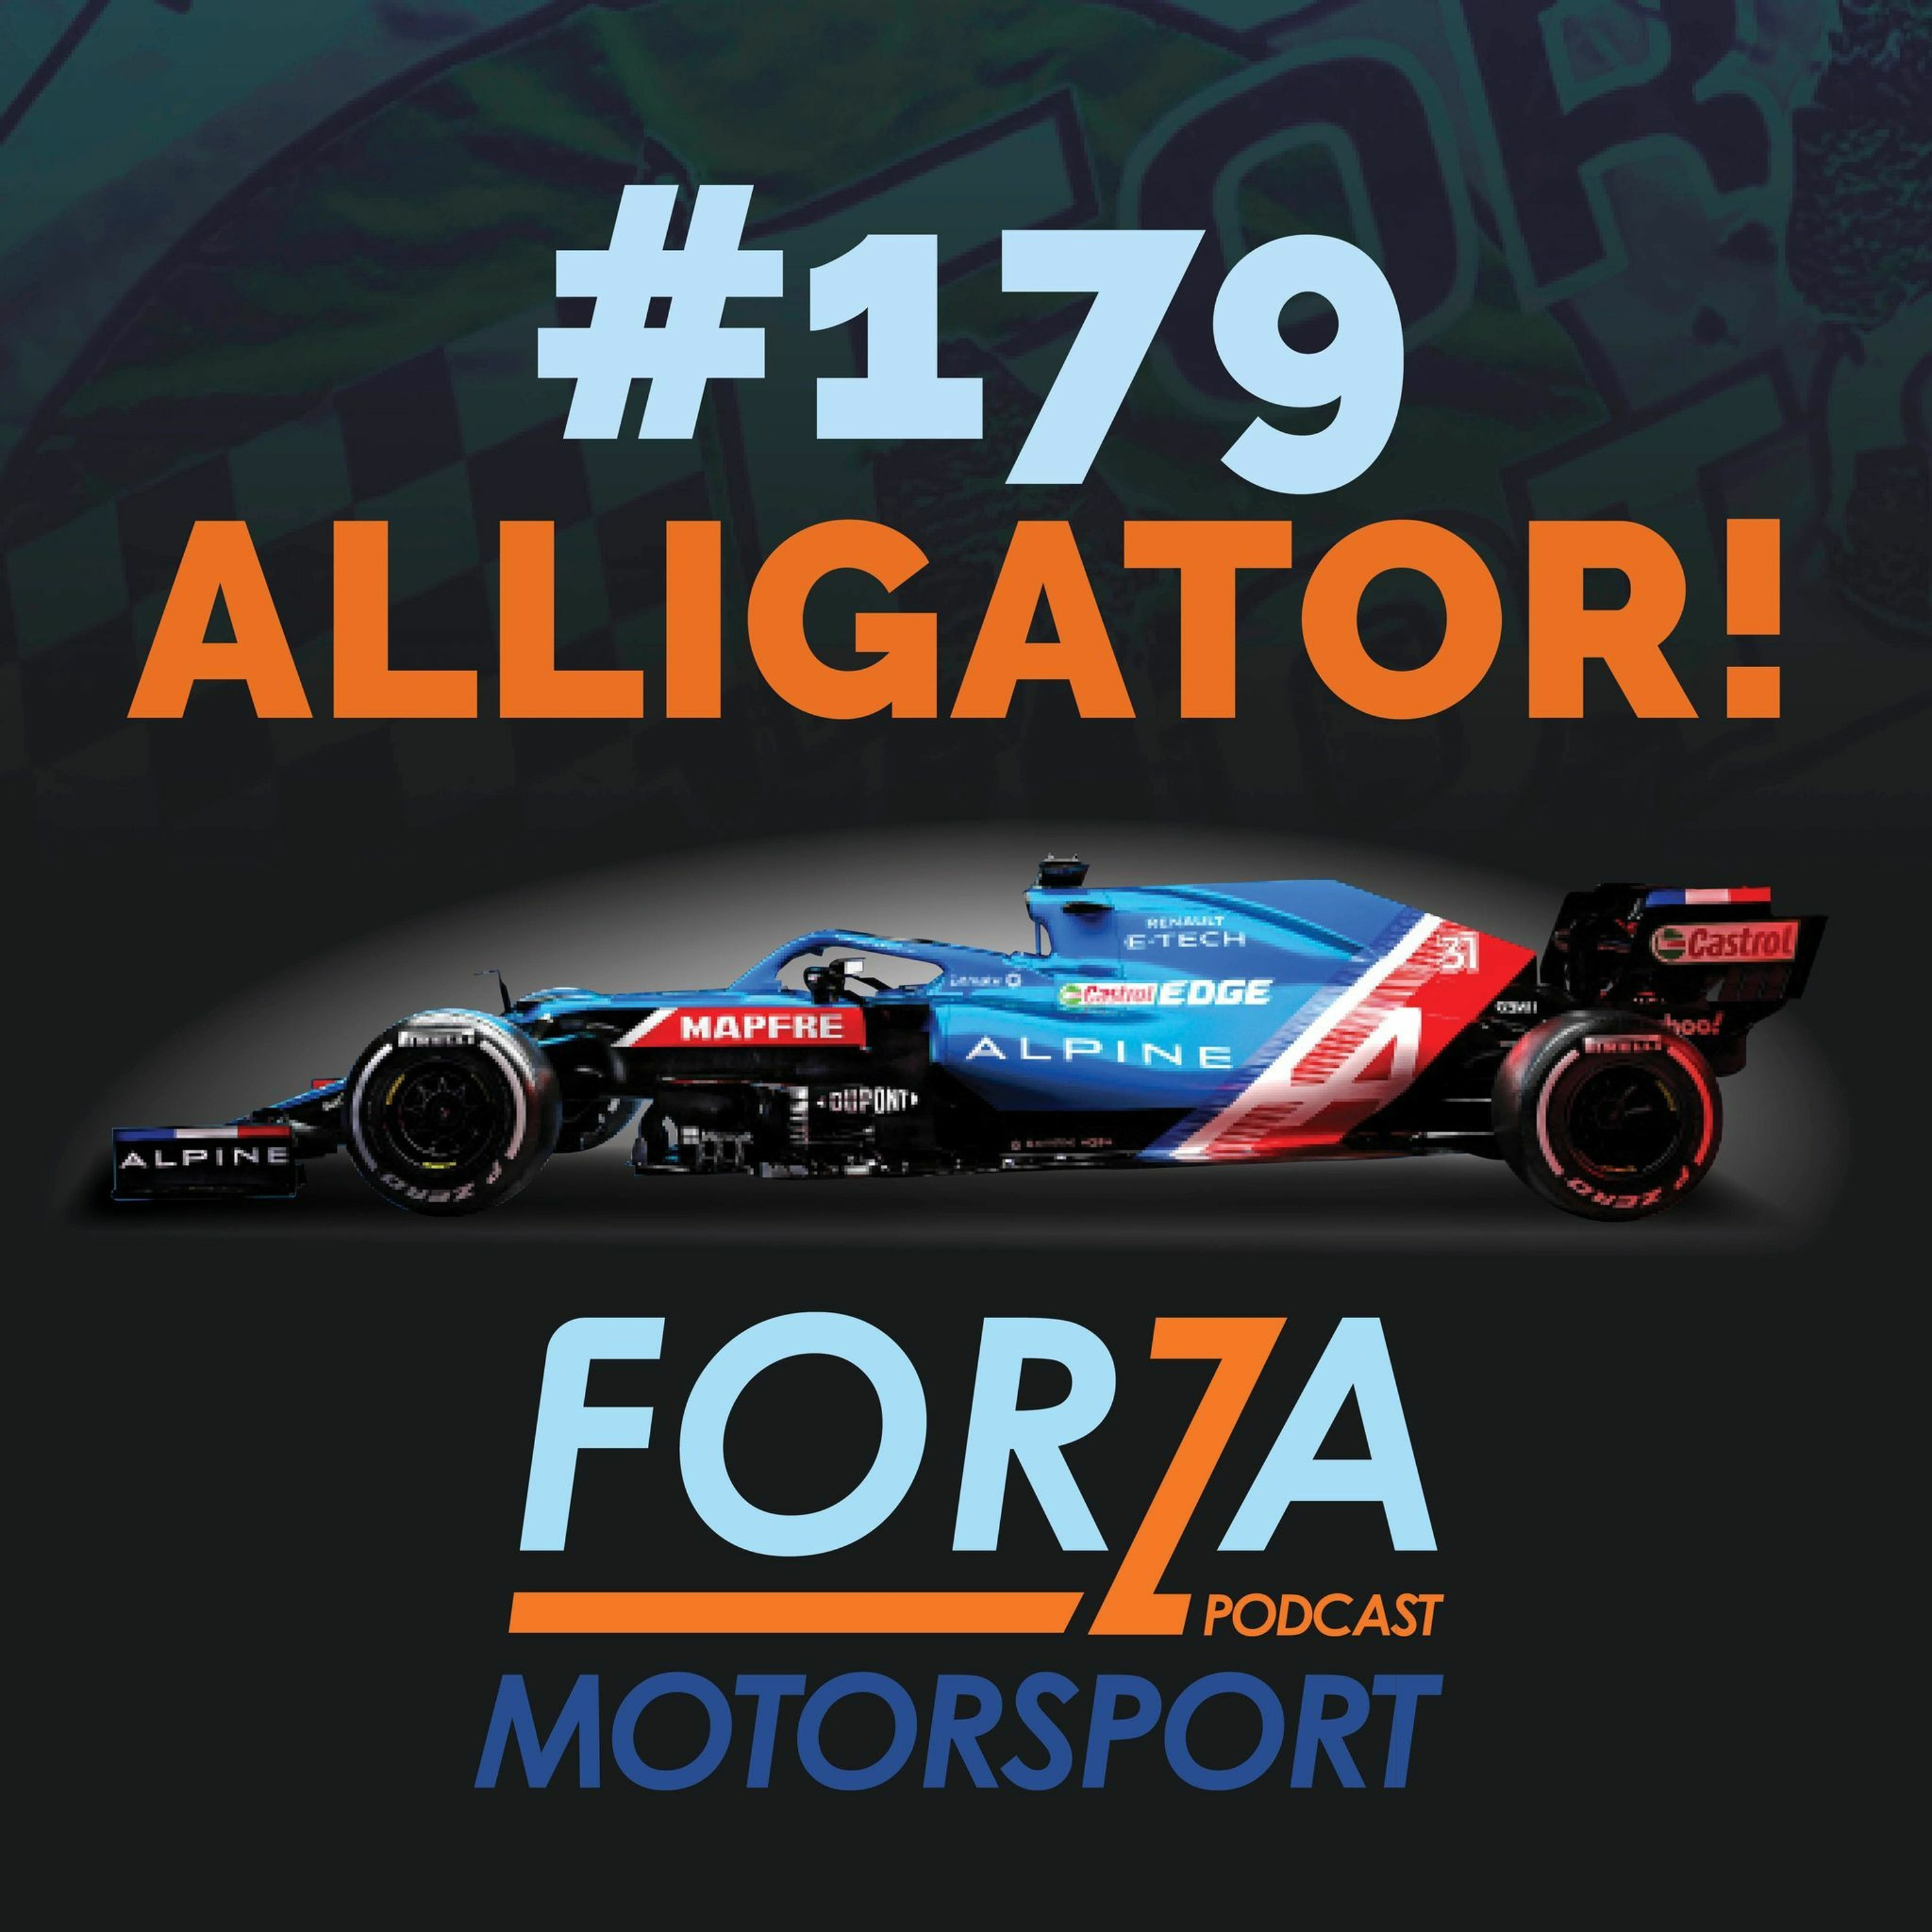 Forzapodden - Avsnitt 179 - Alligator